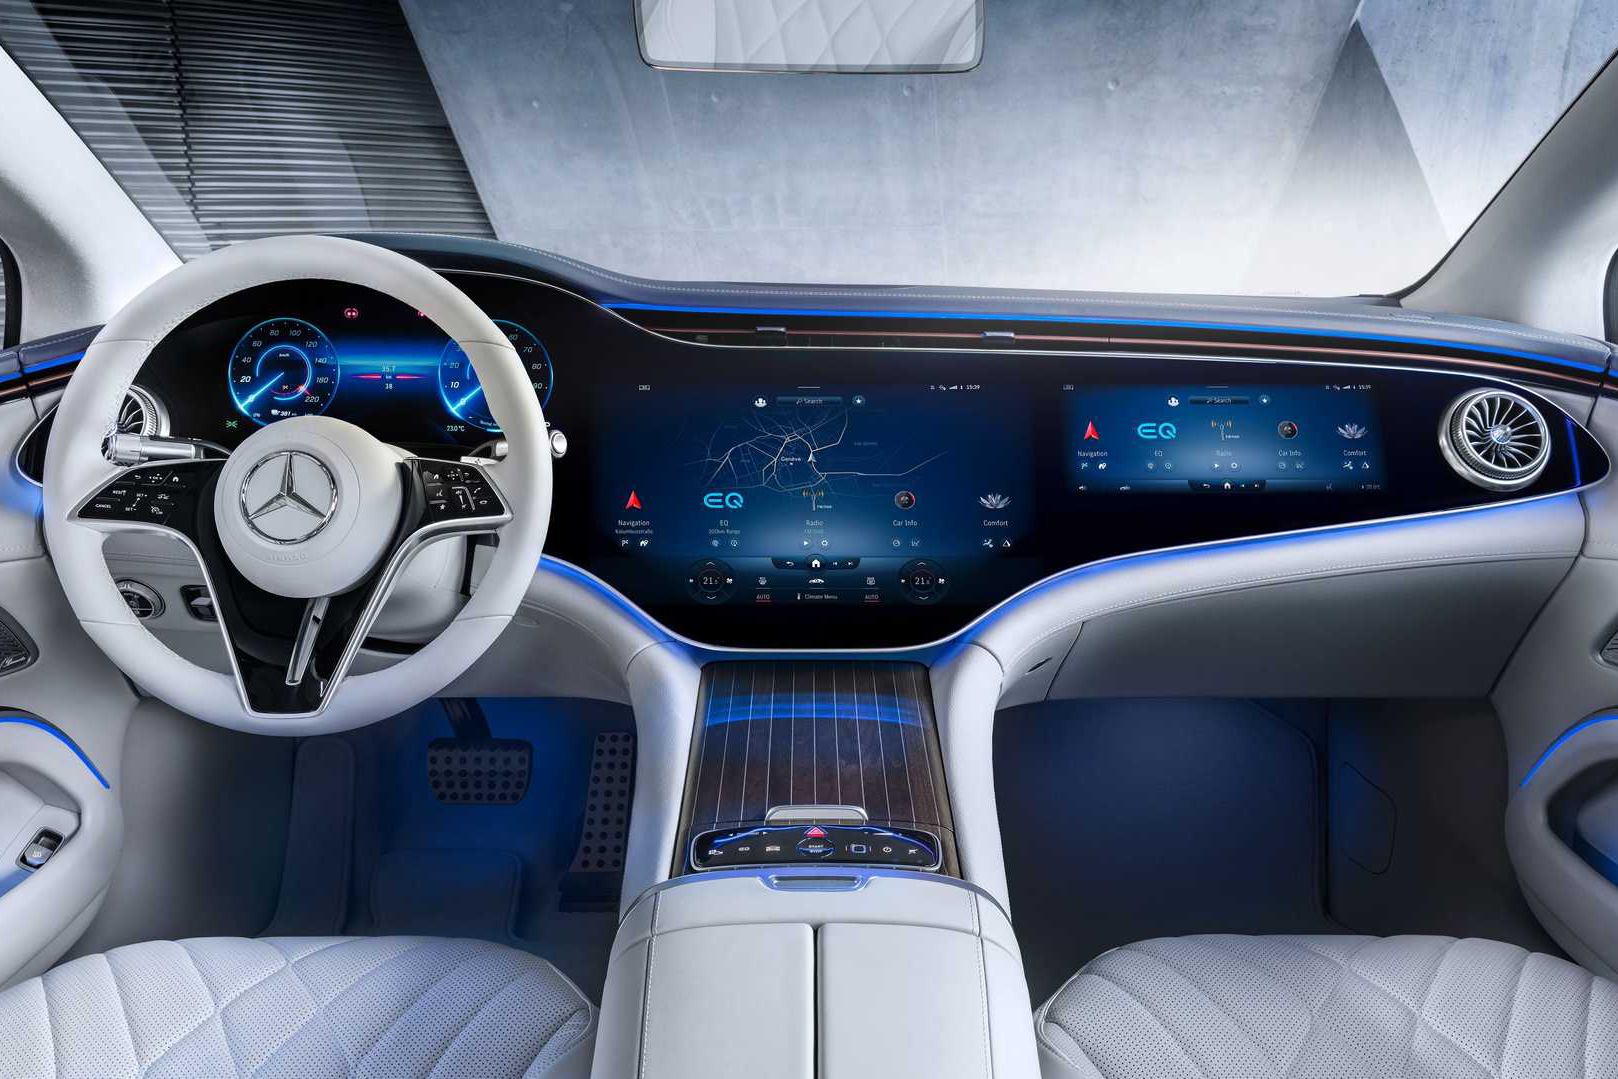 Mercedes-Benz cho người dùng chơi xếp hình, Sudoku ngay trên xe với giá hơn 2 triệu/năm